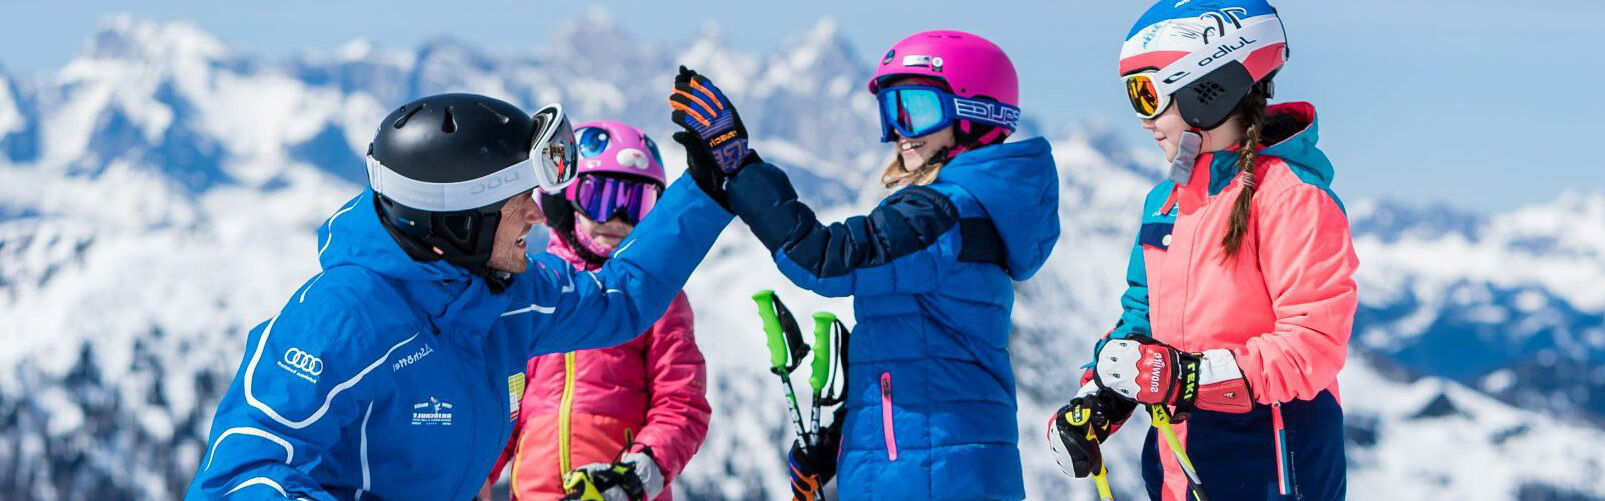 Skischule Flachau - Familienskischule - Kinderkurse Ski ab 3 Jahren